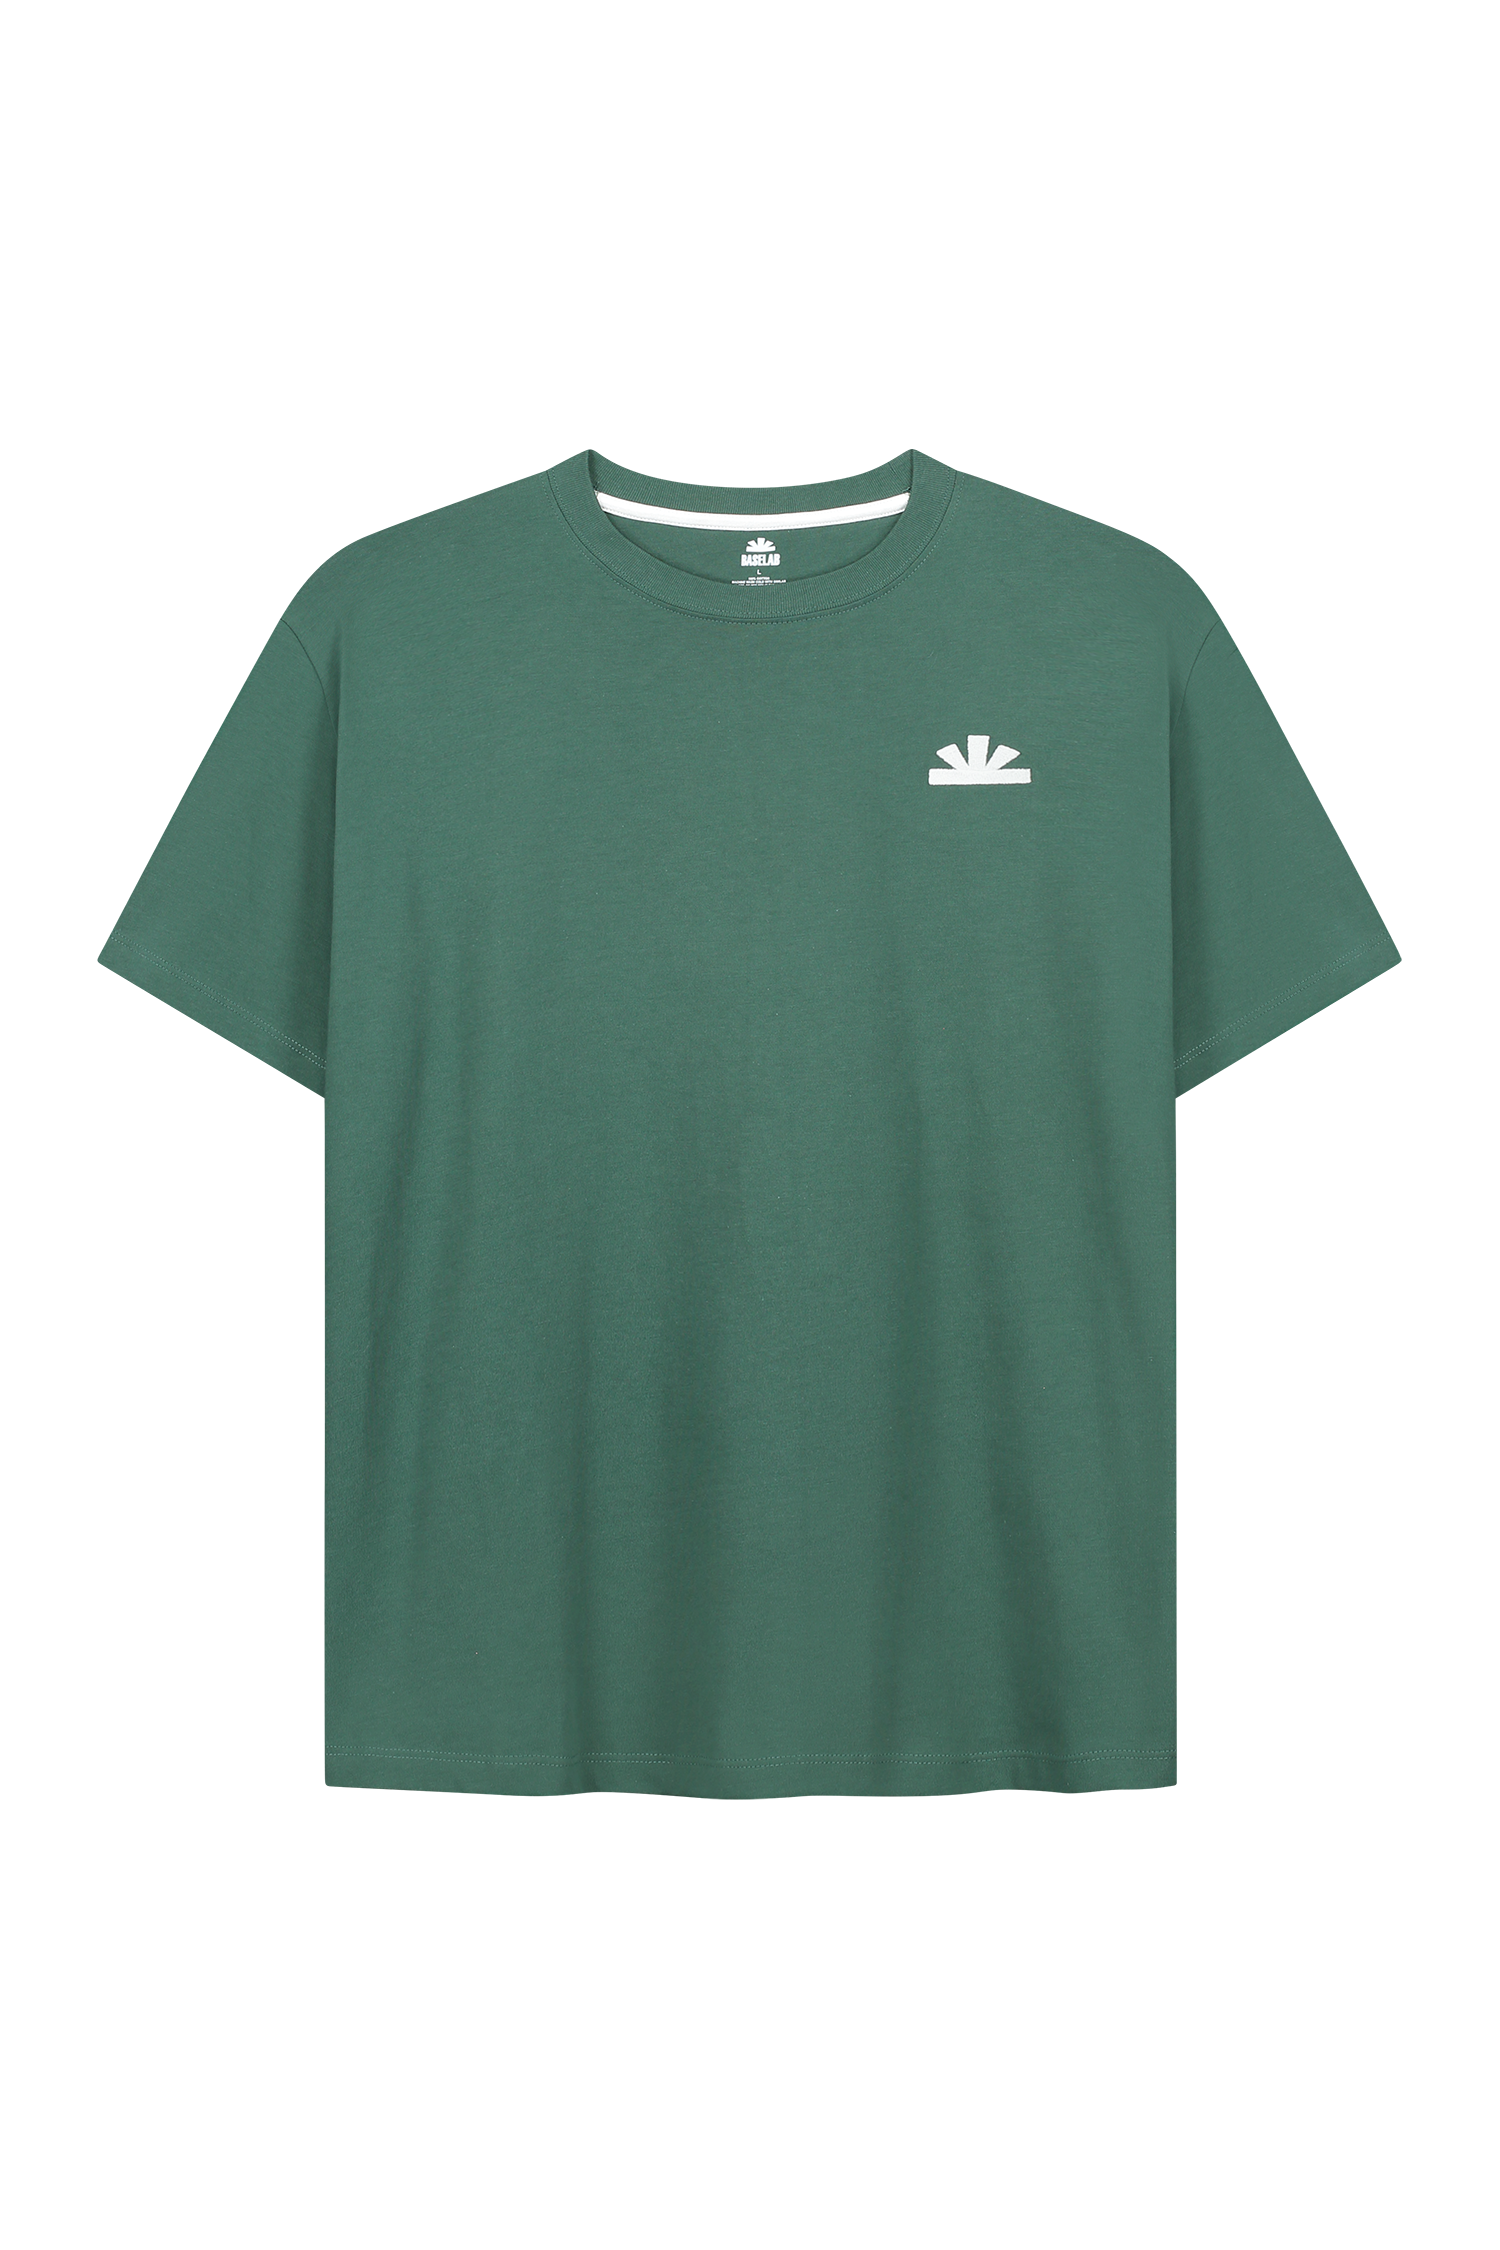 Basic T-shirt groen